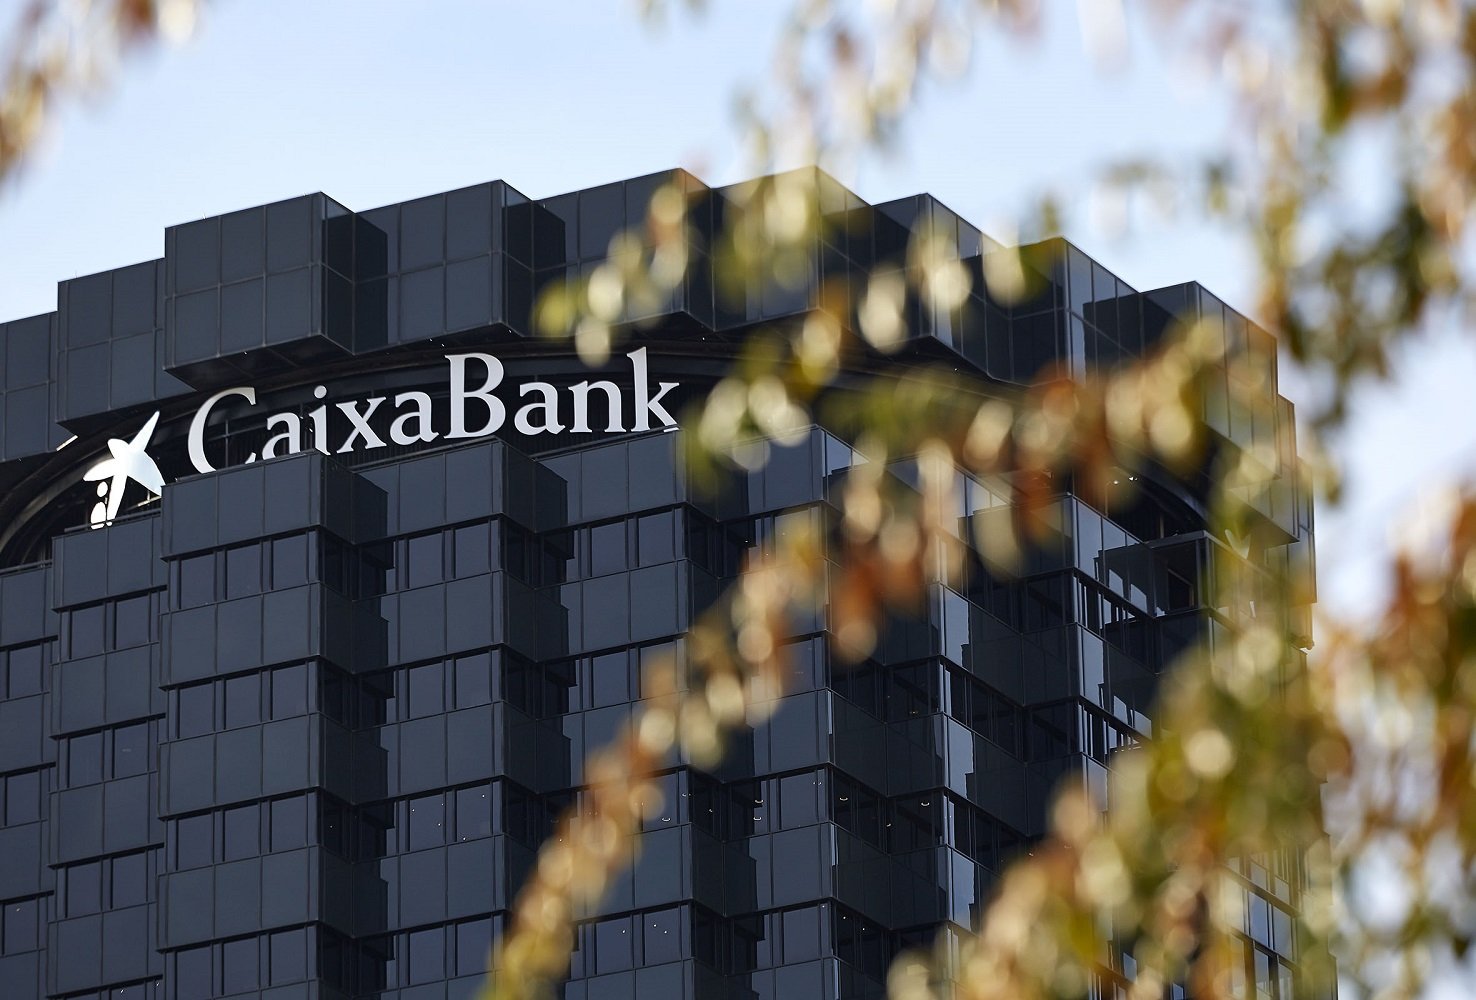 CaixaBank emite 1.000 millones de euros en su primer bono verde del año